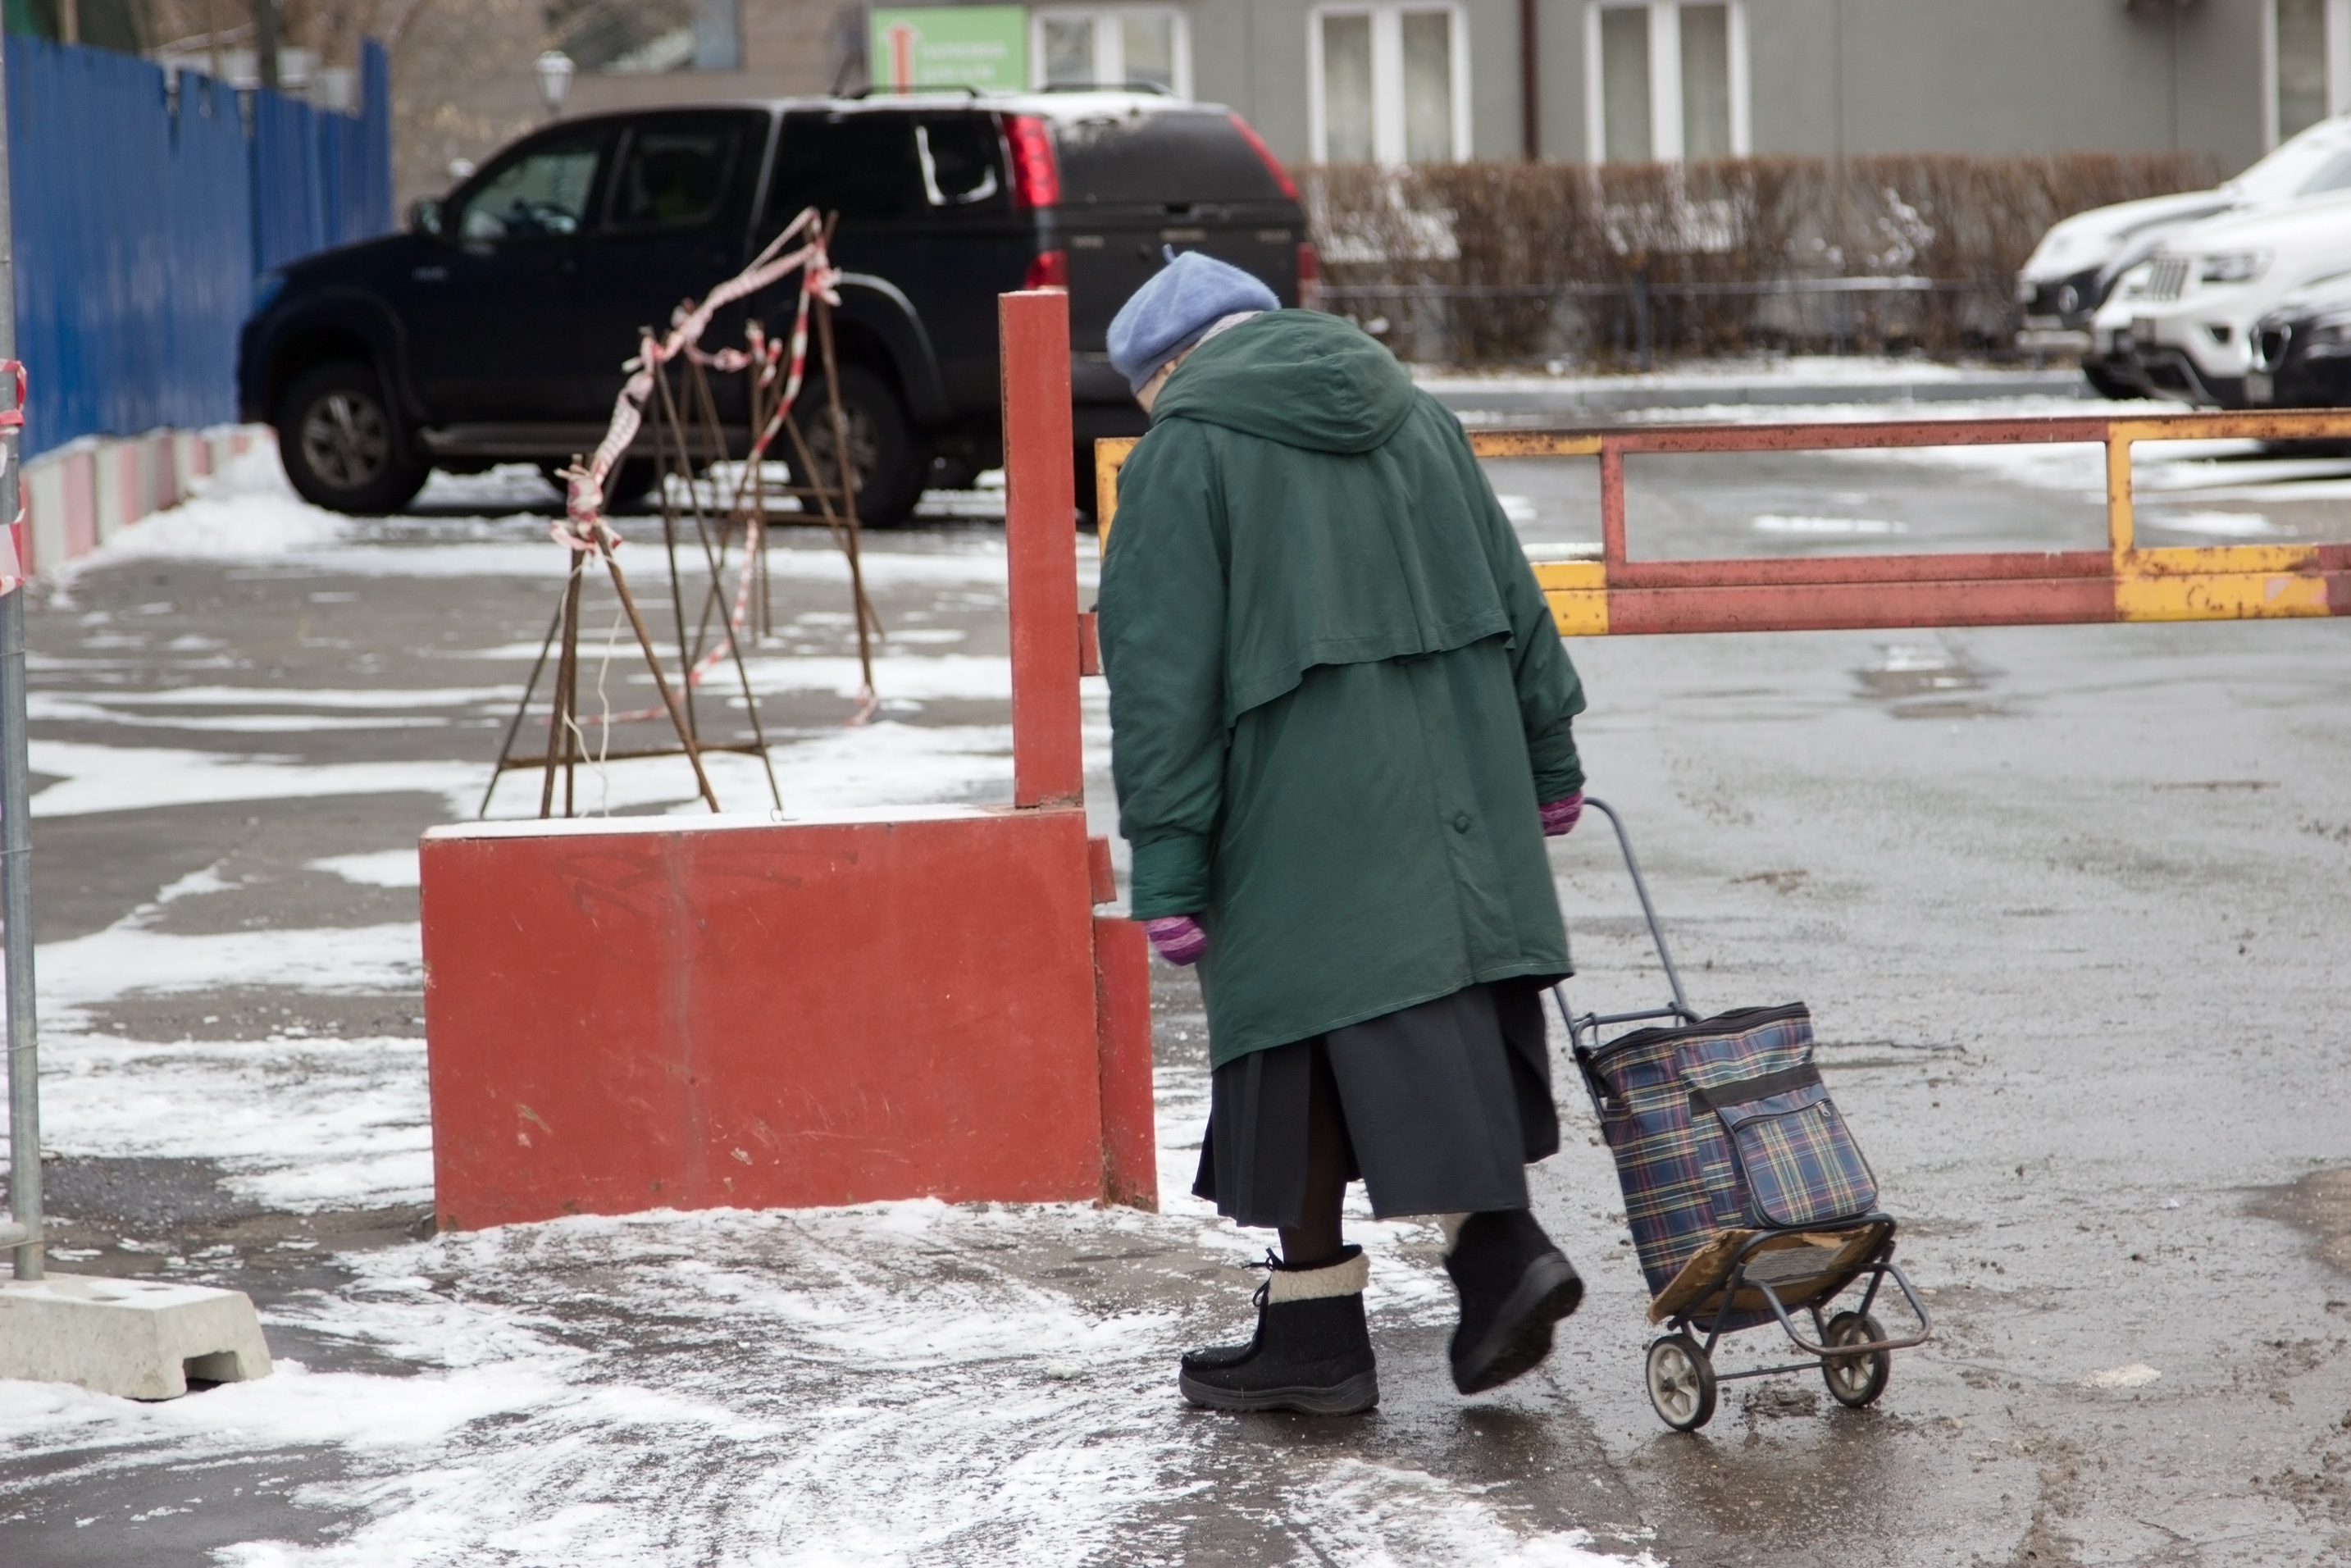 Einsame ältere Dame auf einer verschneiten Straße | Quelle: Shutterstock